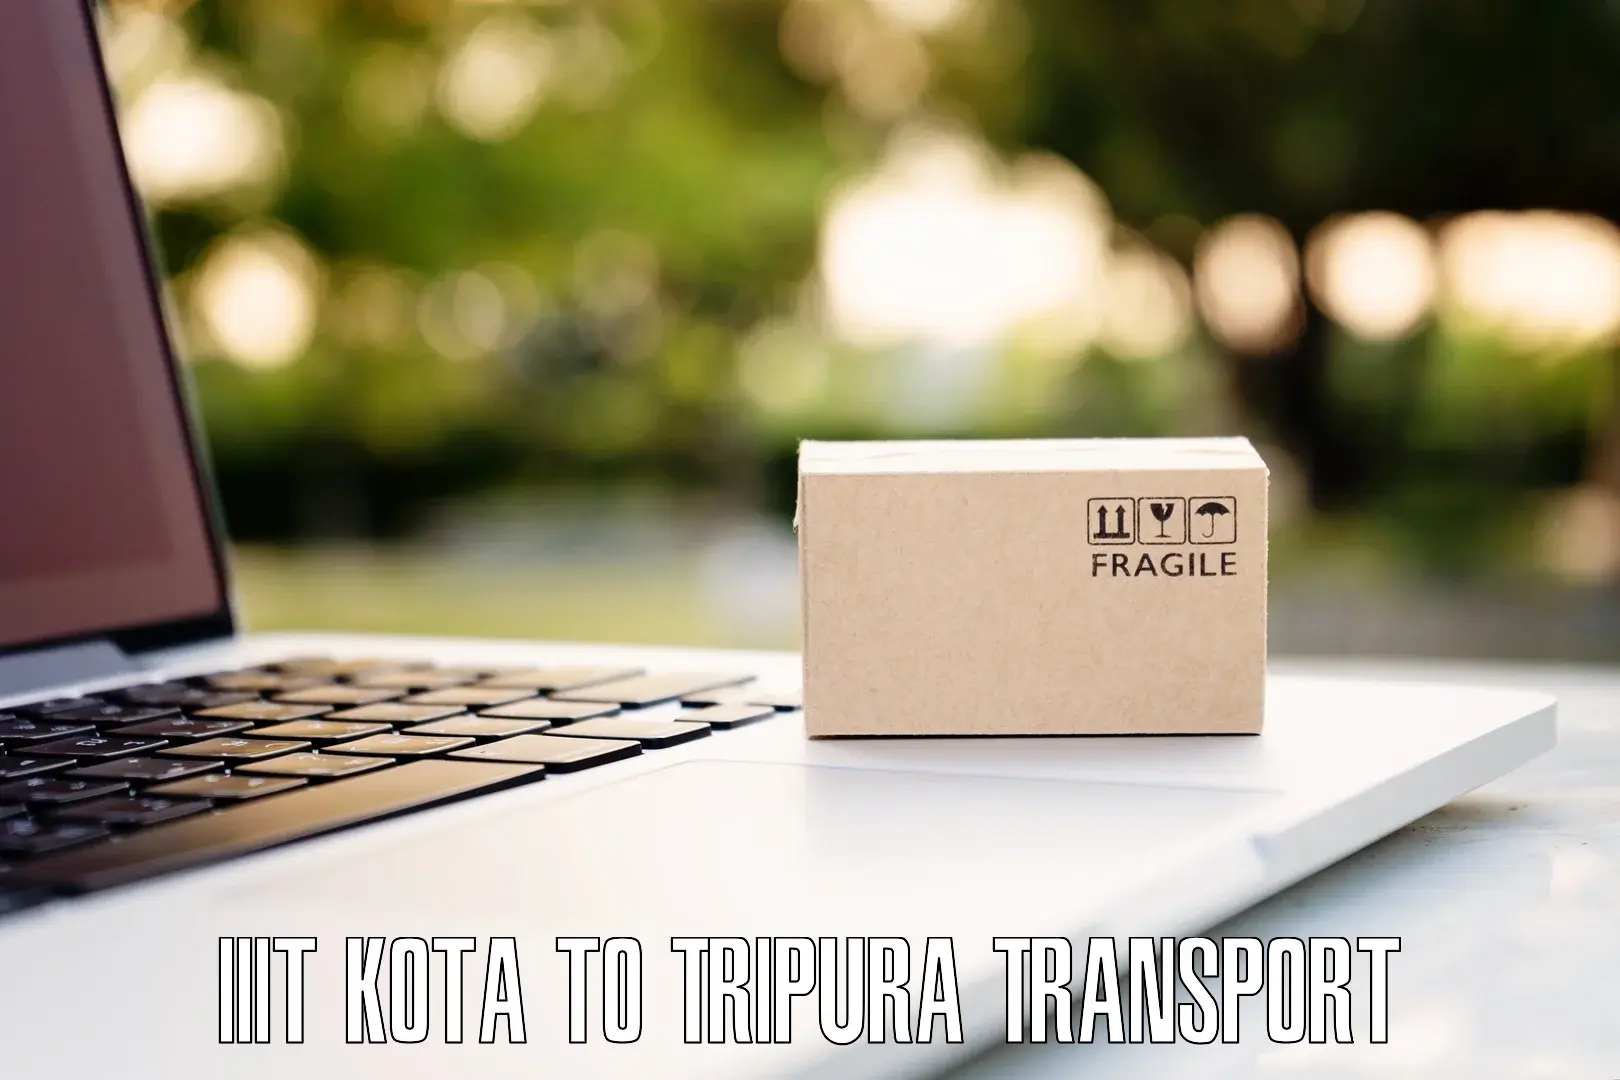 All India transport service IIIT Kota to Manu Bazar